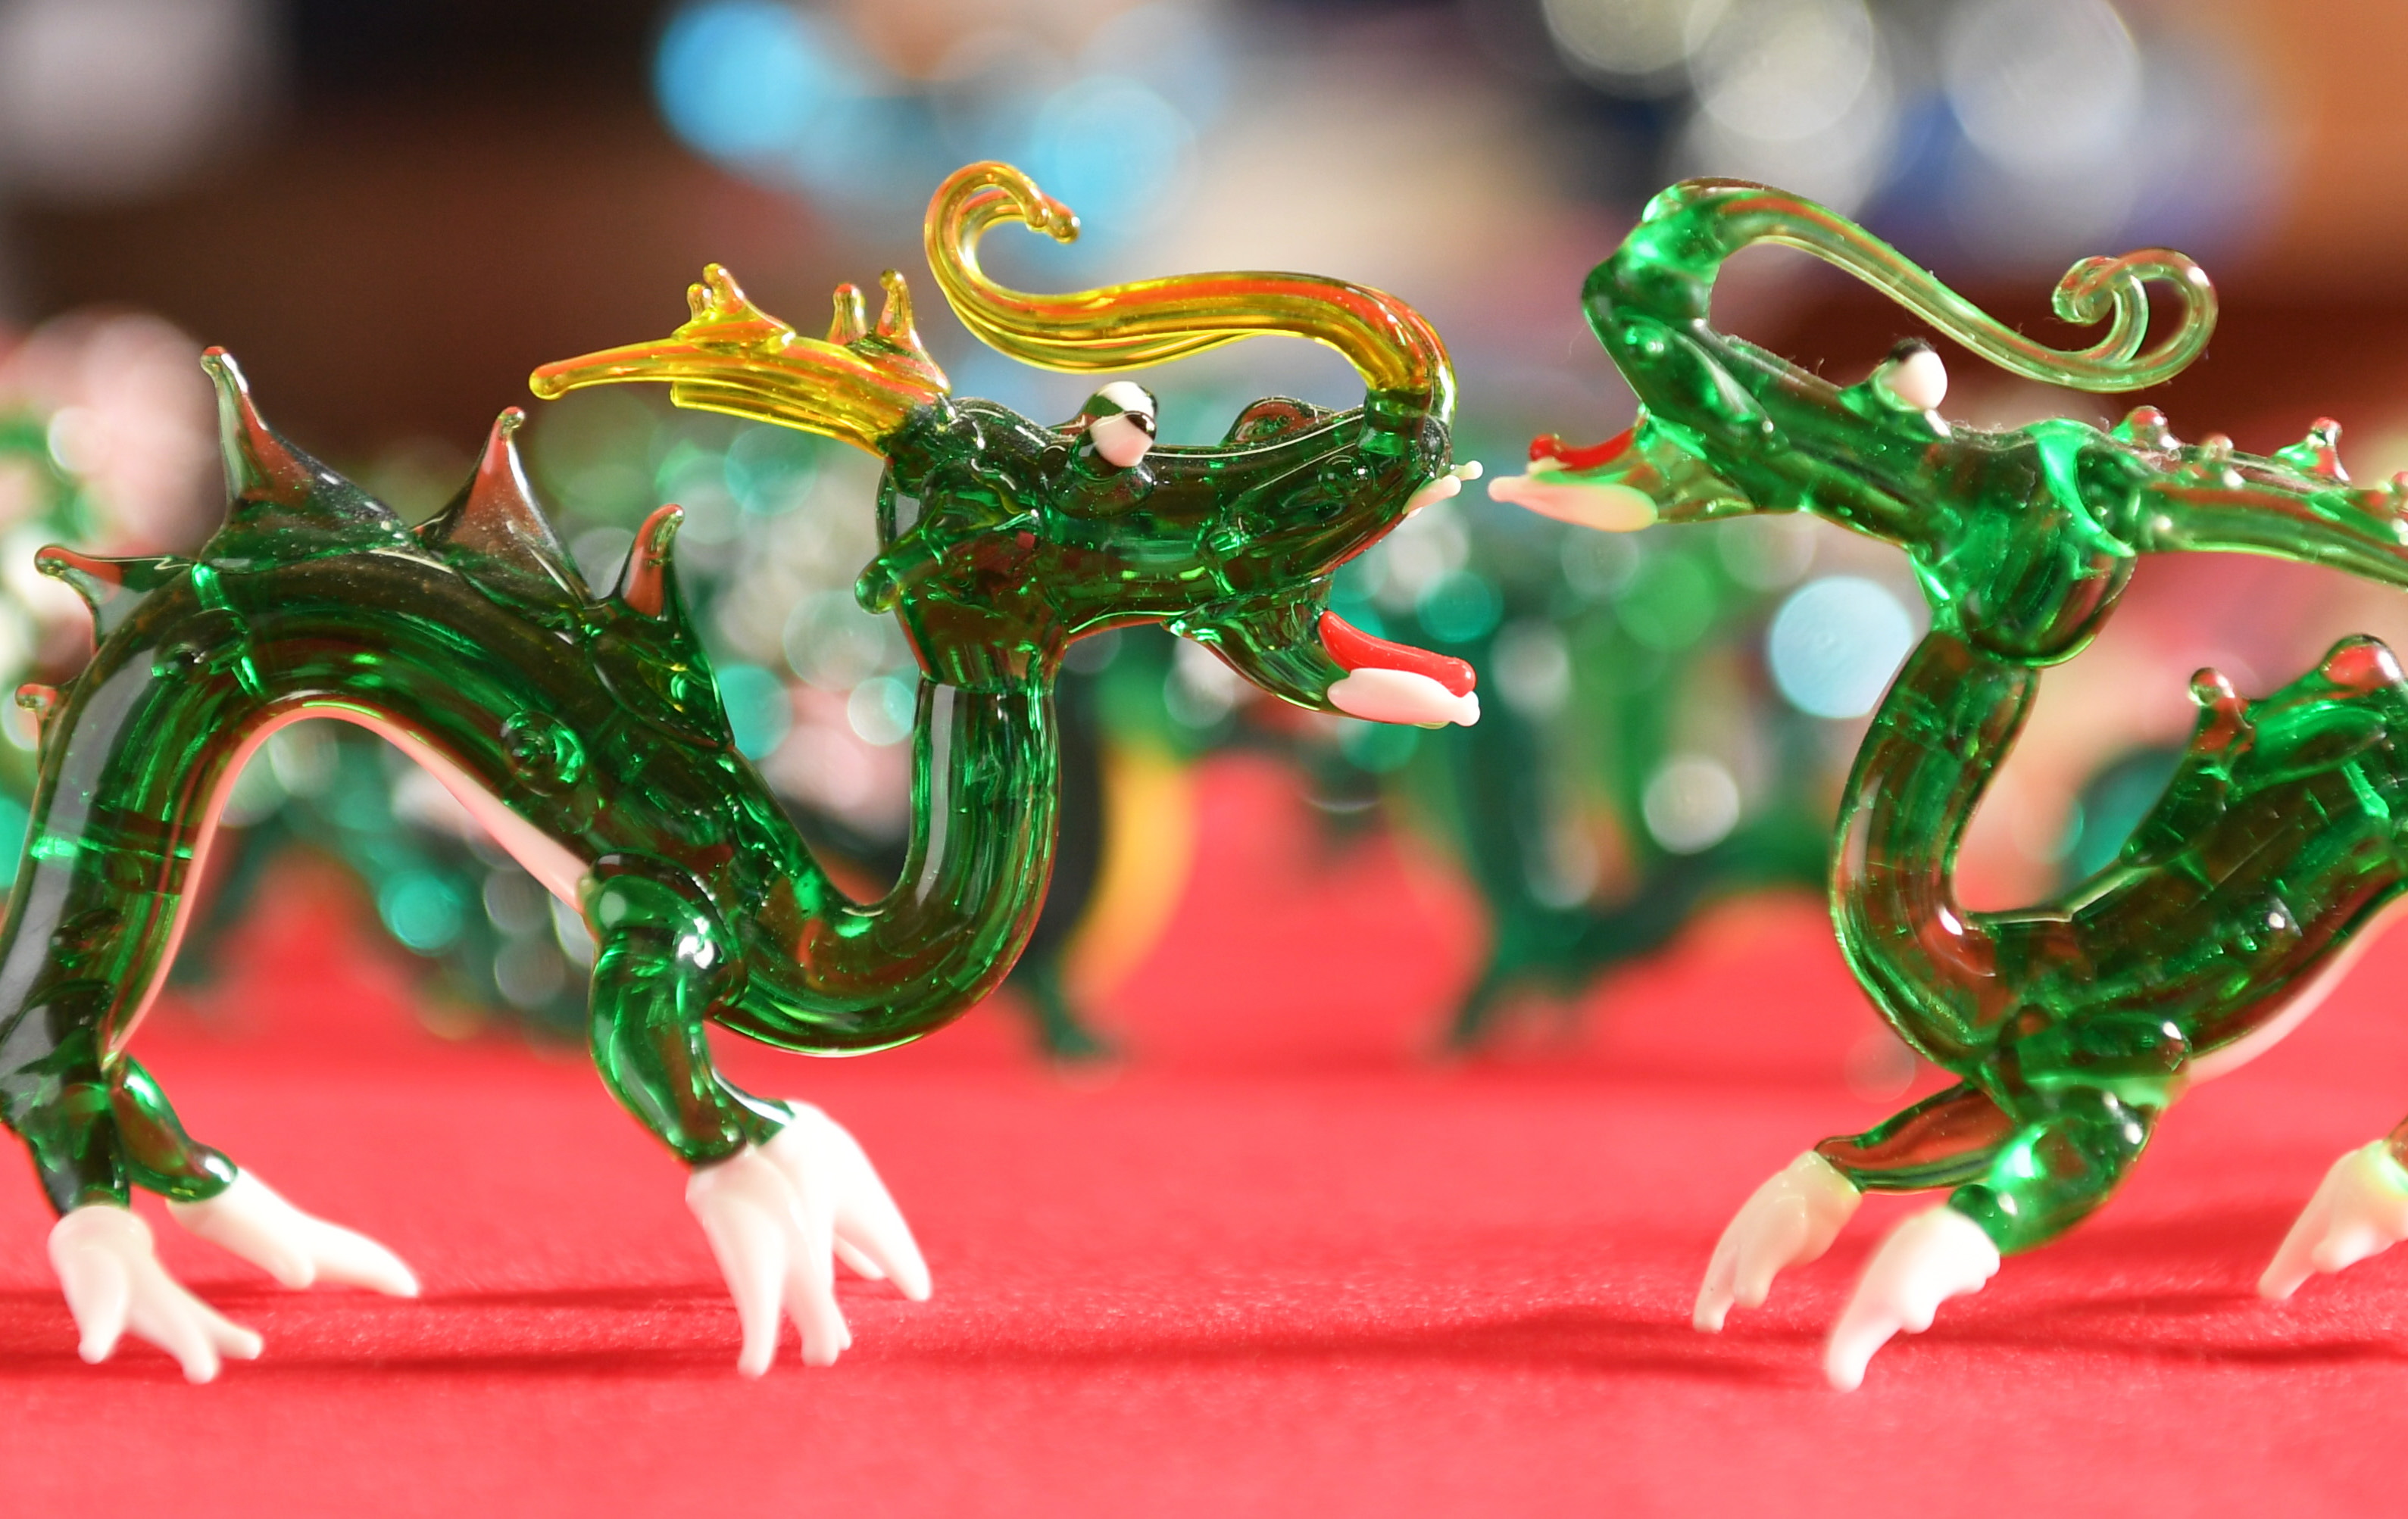 躍動する竜、新年の出番待つ 干支ガラス細工の製作ピーク - 産経ニュース